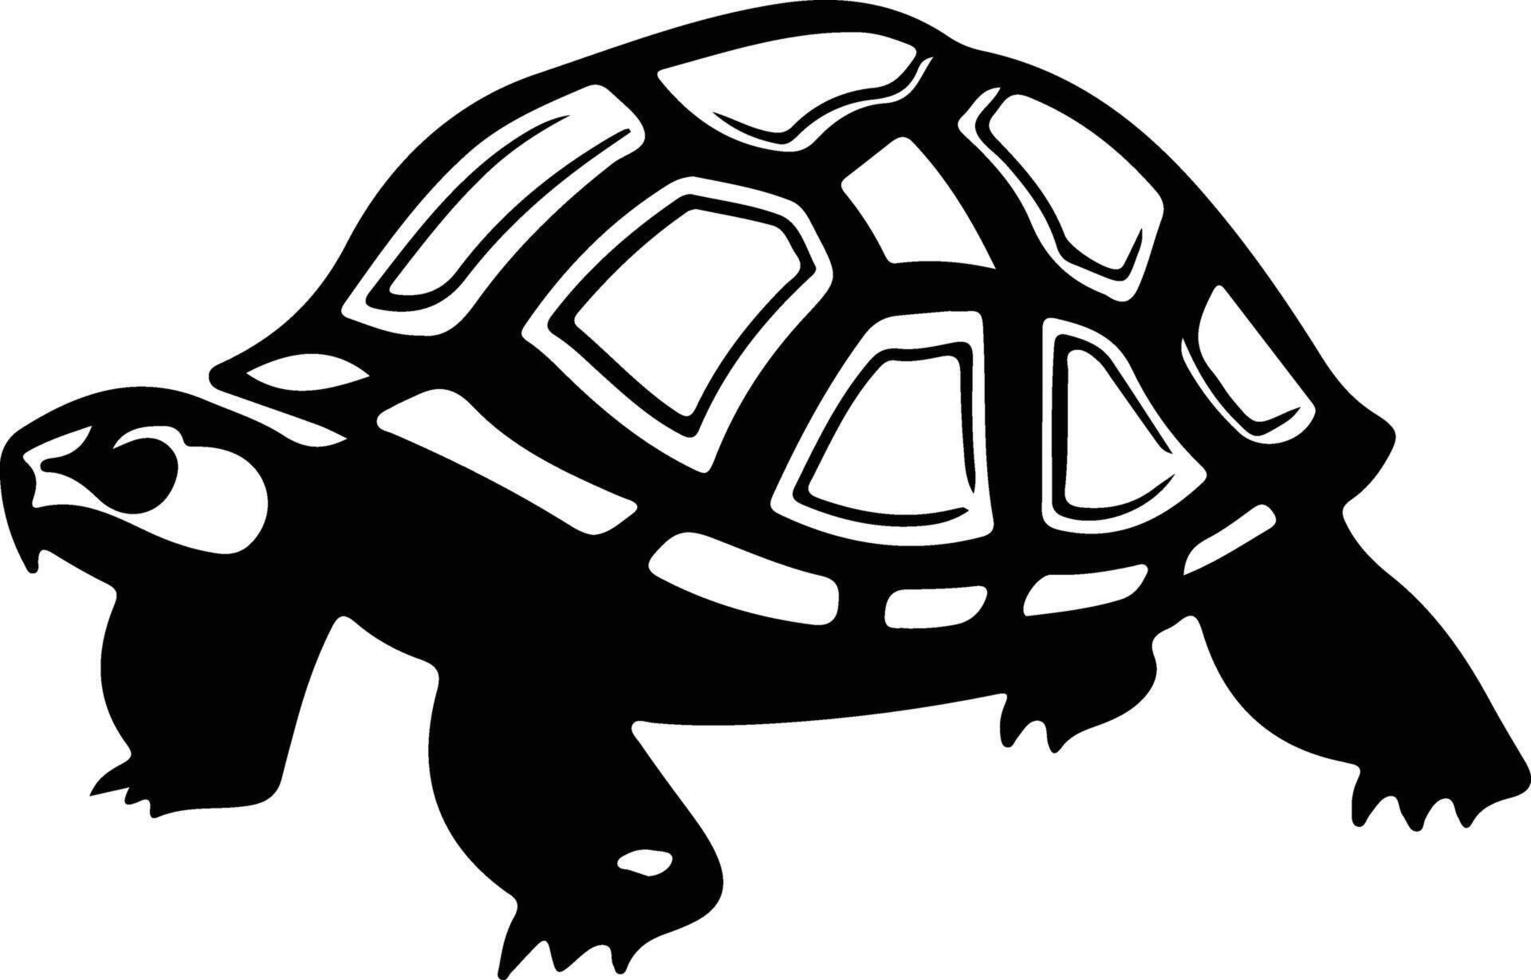 soc tortue noir silhouette vecteur